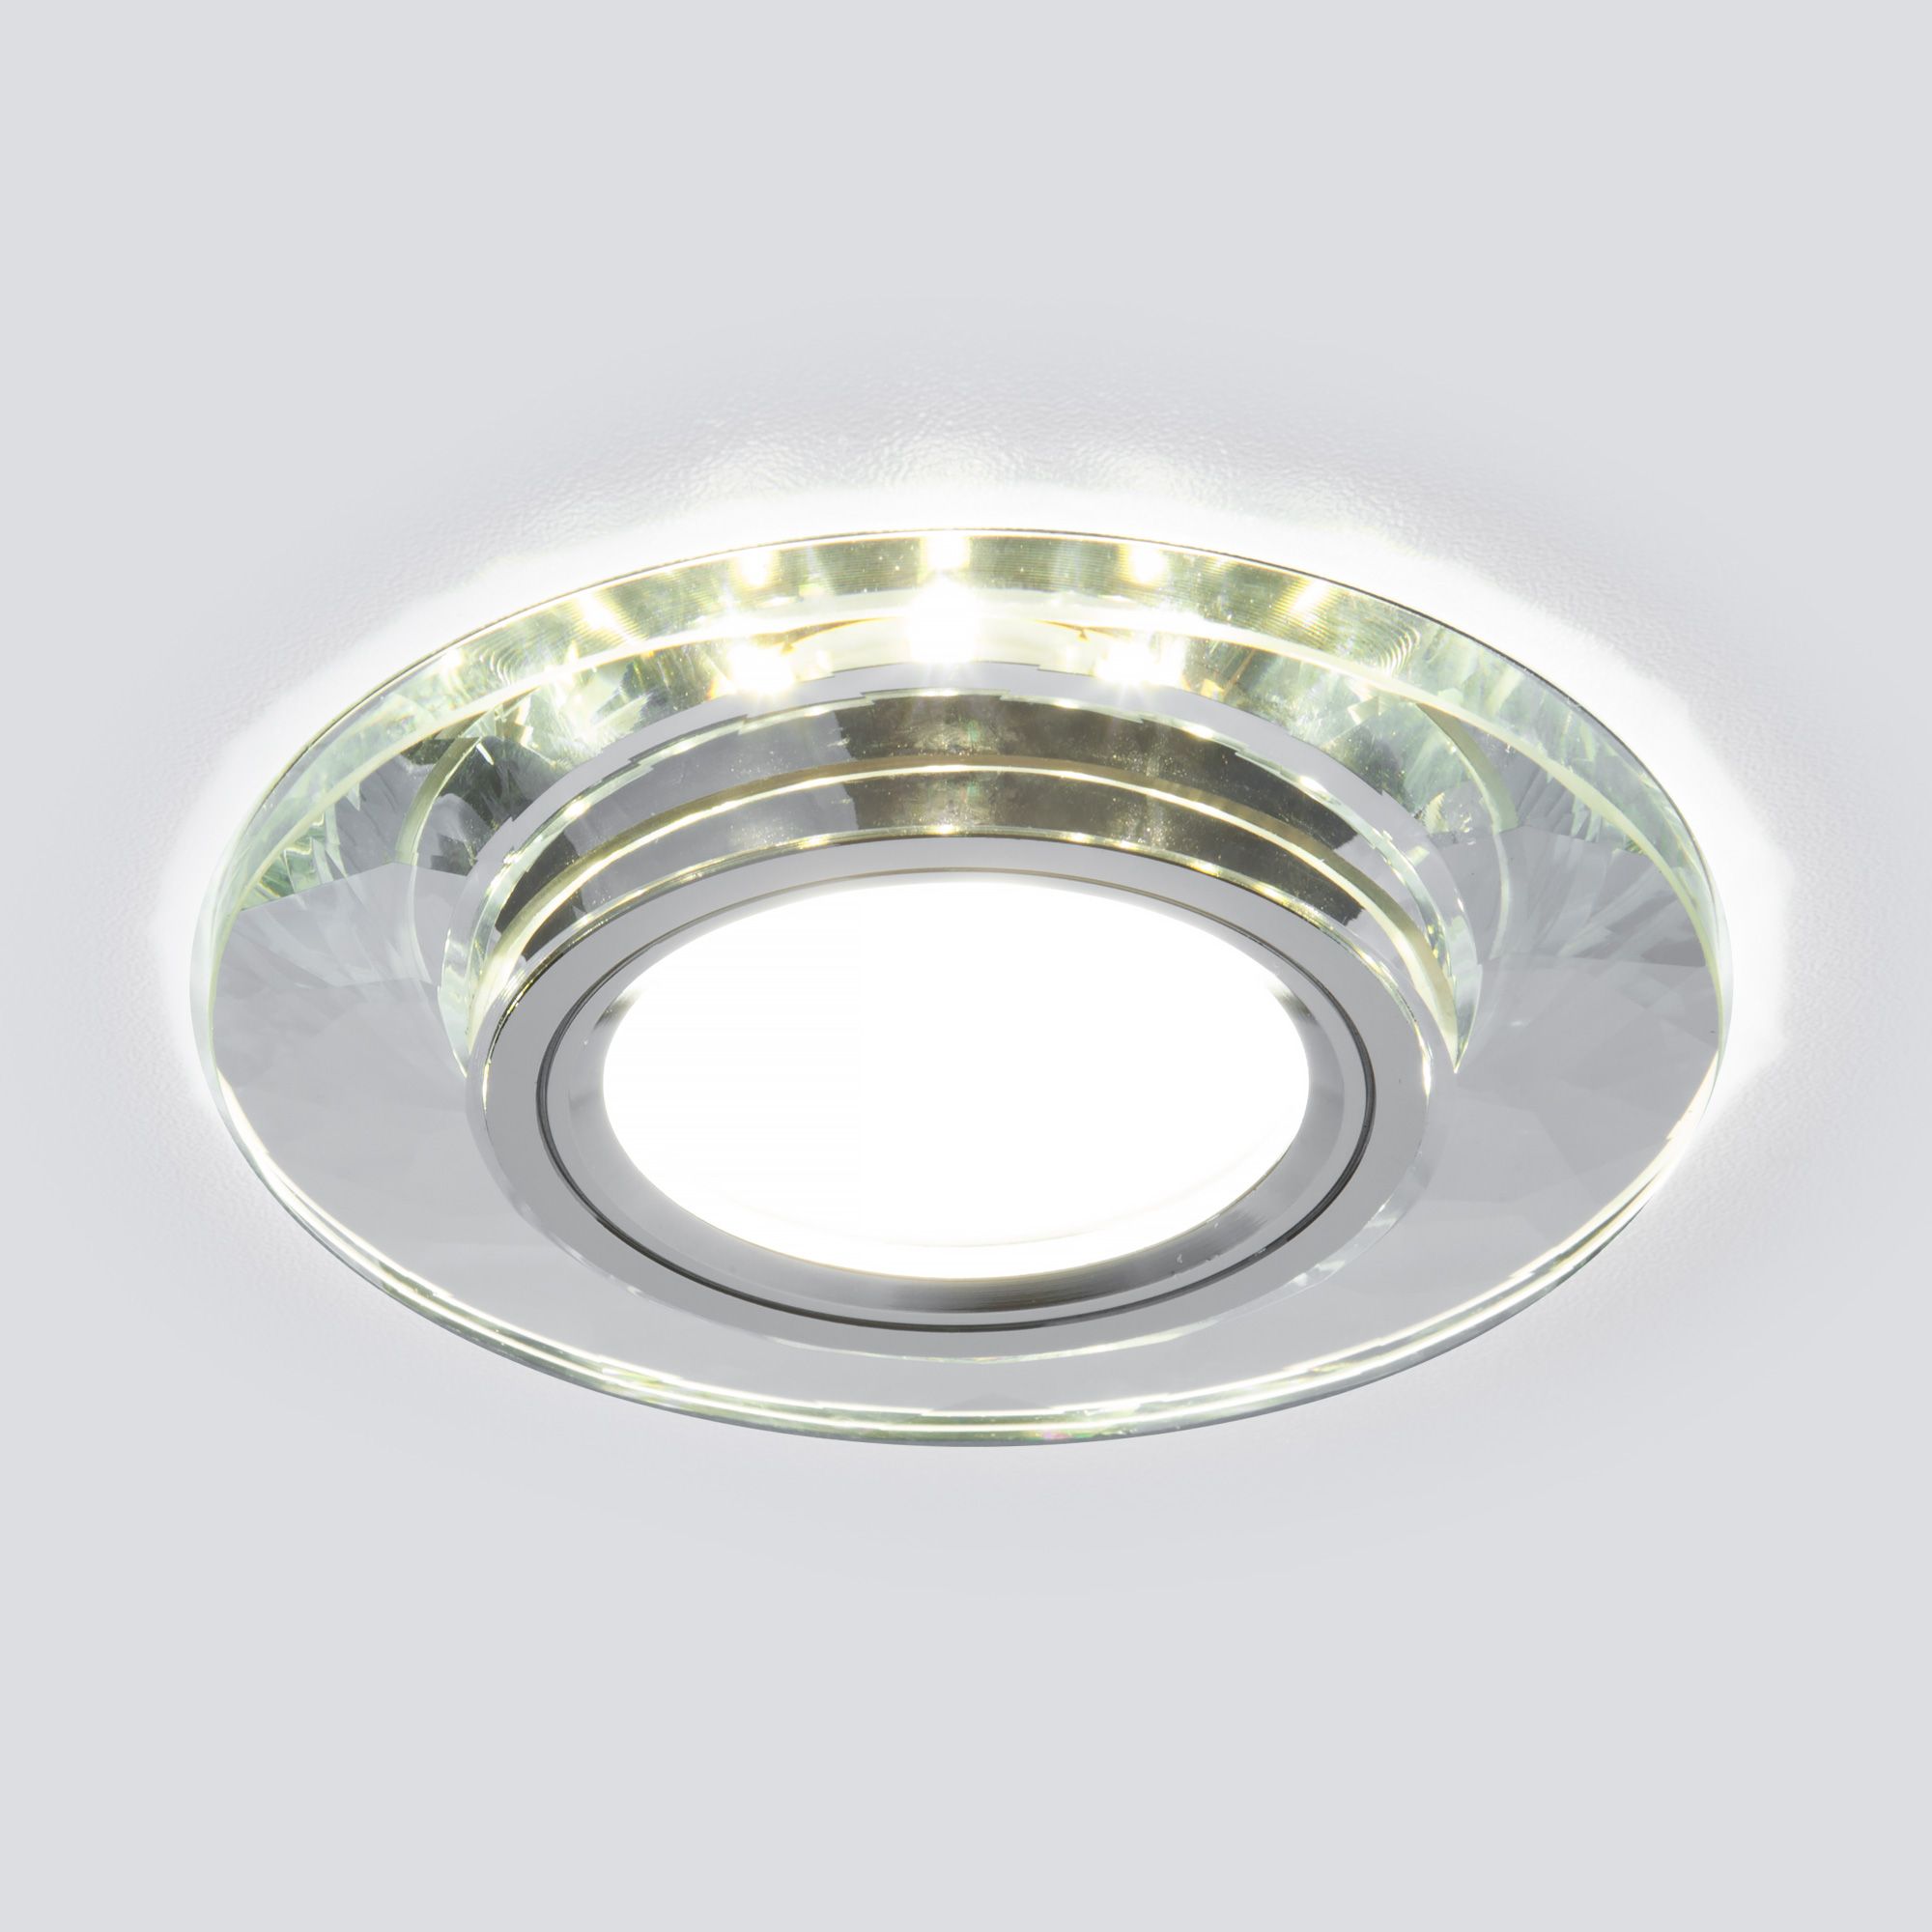 Встраиваемый точечный светильник со светодиодной подсветкой 2228 MR16 SL зеркальный/серебро